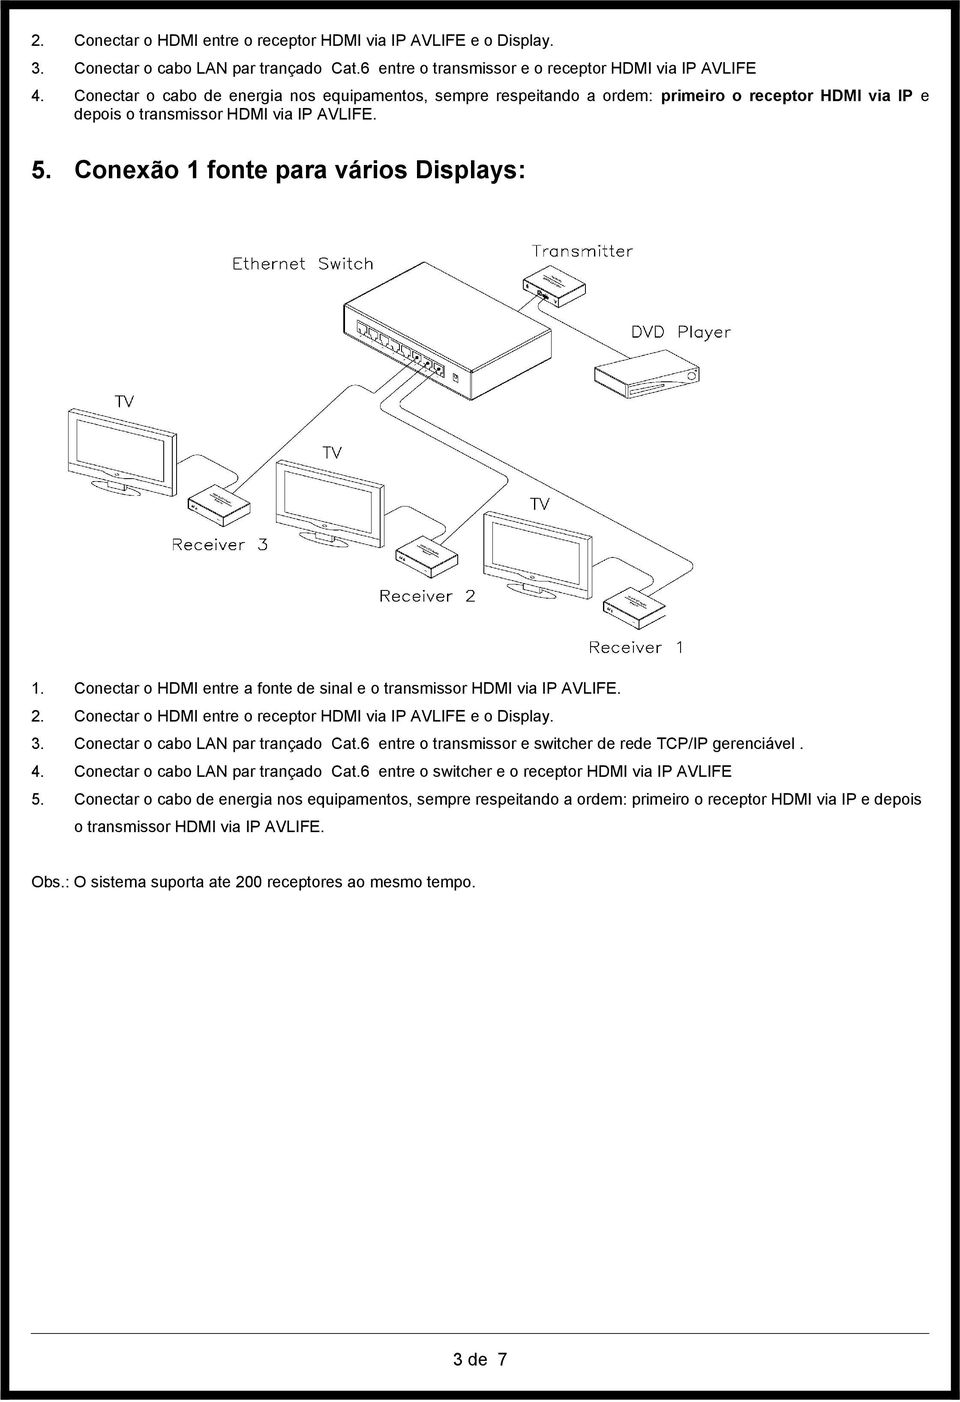 Conectar o HDMI entre a fonte de sinal e o transmissor HDMI via IP AVLIFE. 2. Conectar o HDMI entre o receptor HDMI via IP AVLIFE e o Display. 3. Conectar o cabo LAN par trançado Cat.